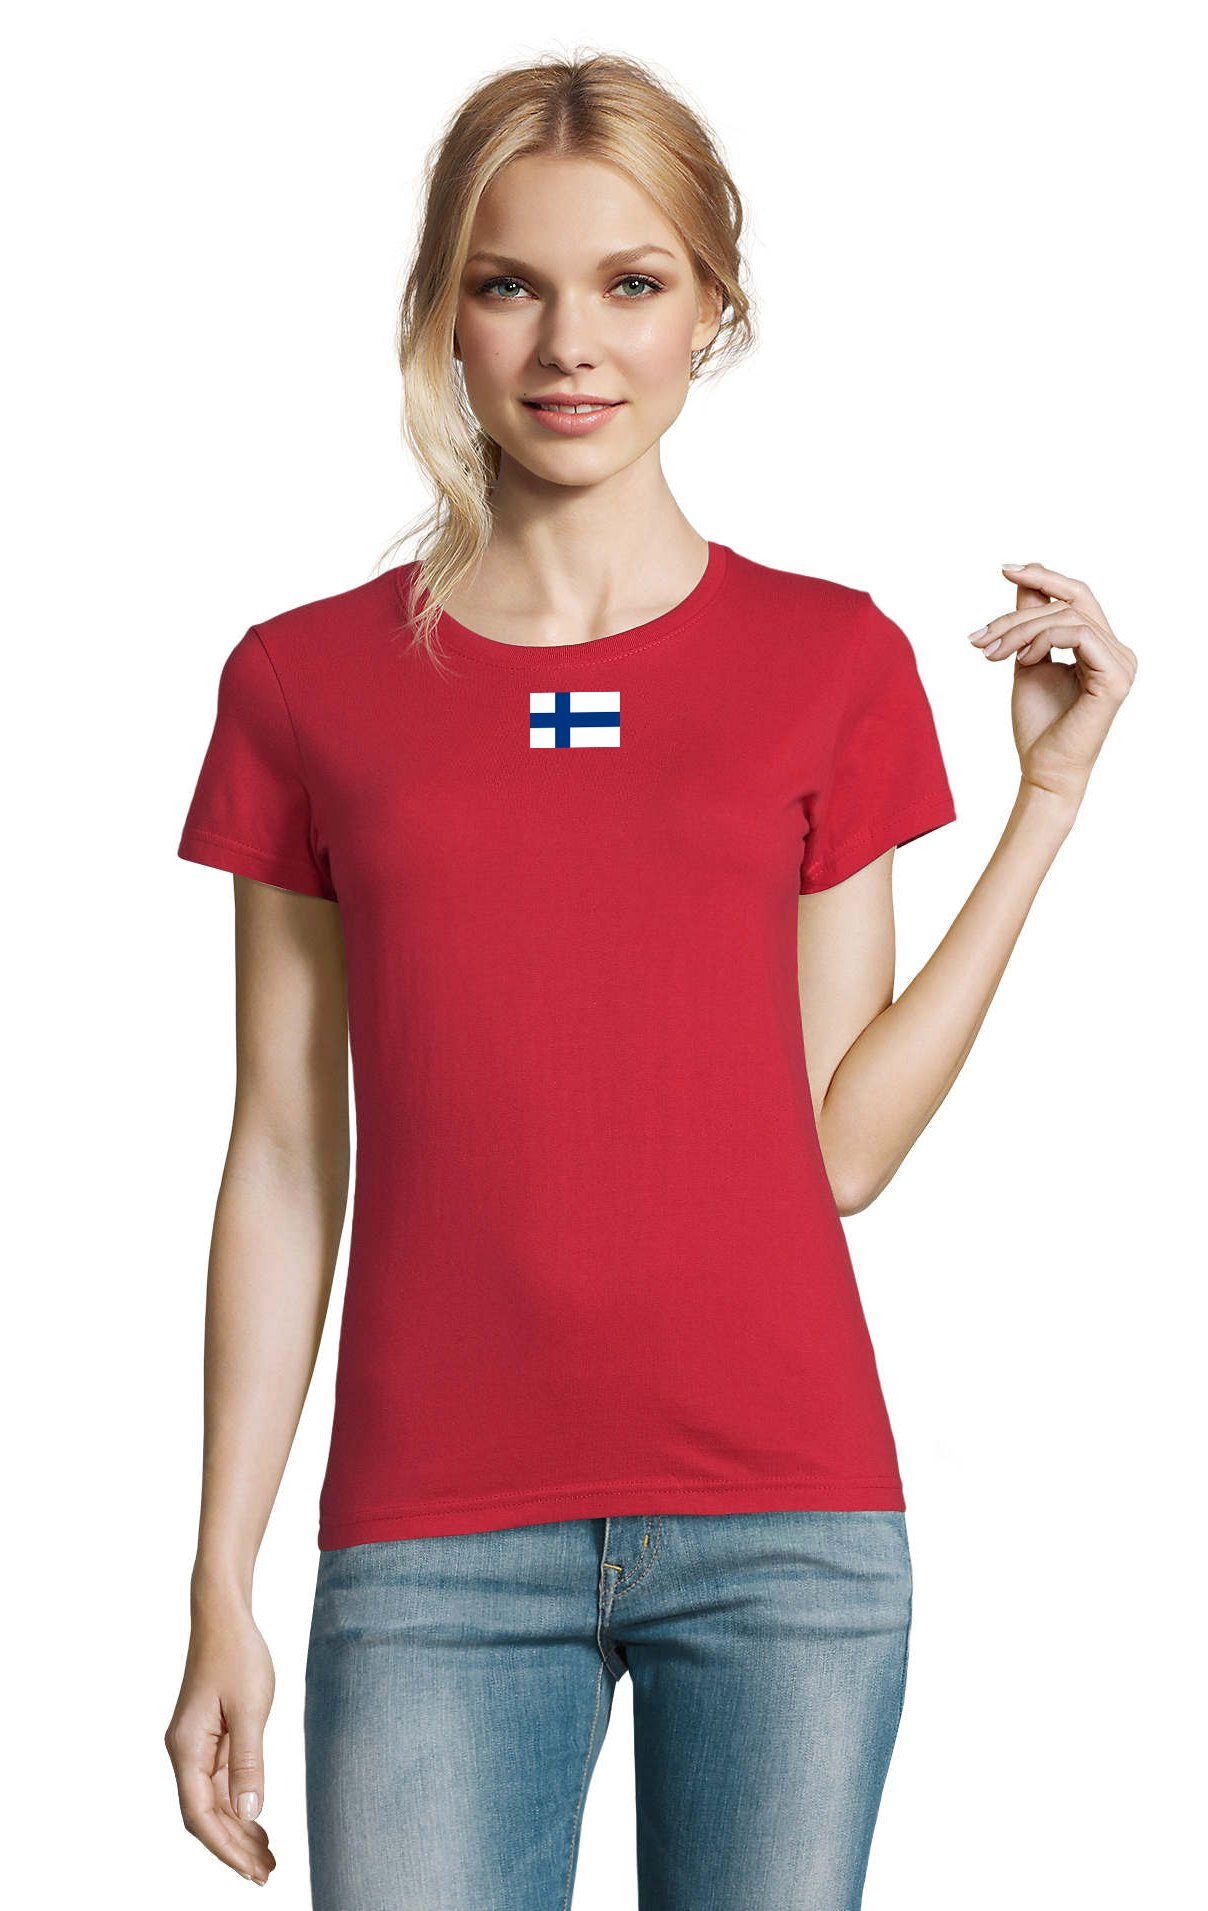 Blondie & Brownie T-Shirt Damen Nation Finnland Finland Ukraine USA Army Armee Nato Peace